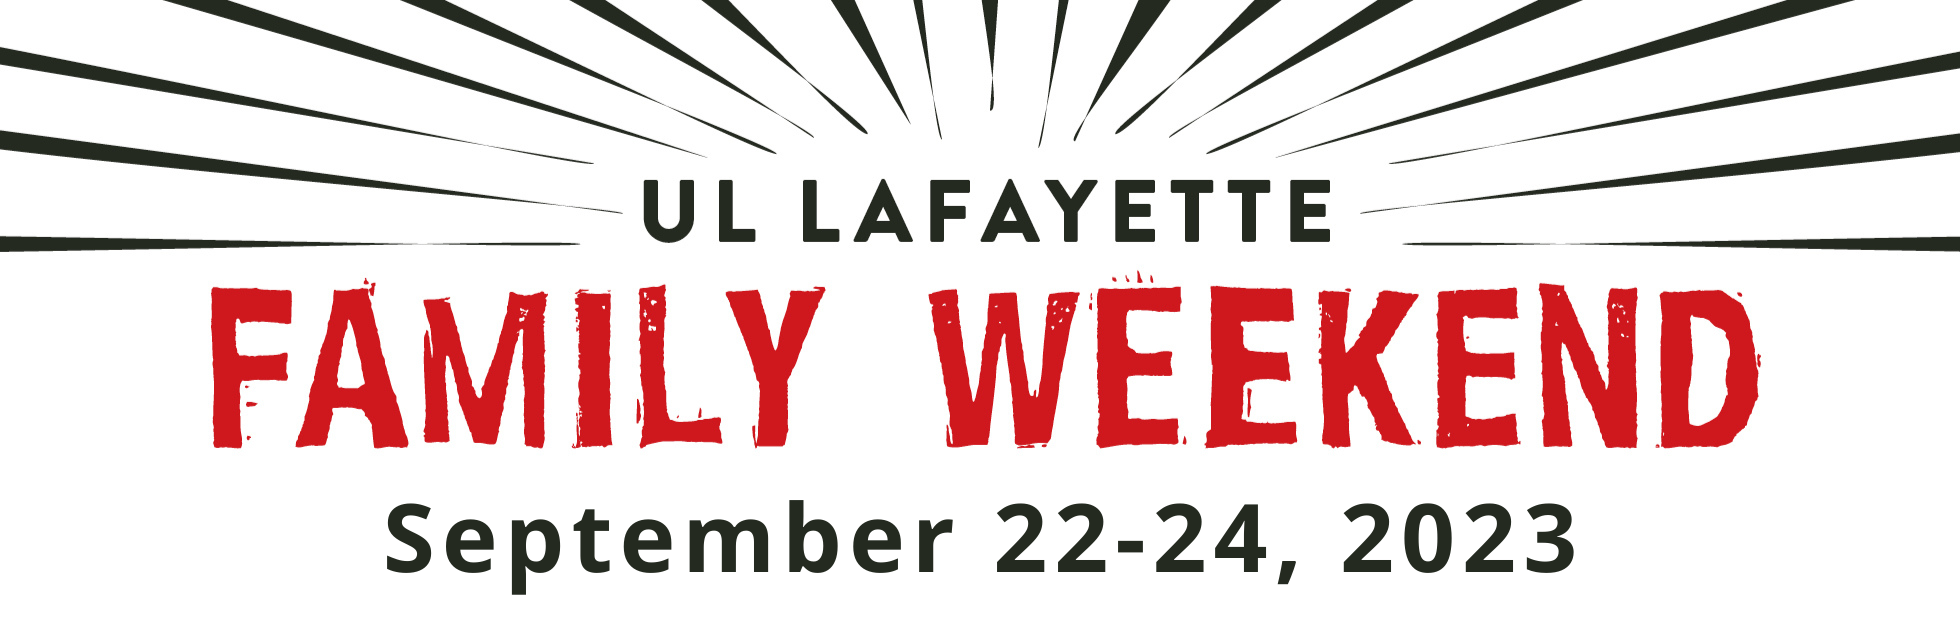 UL Lafayette Family Weekend September 22-24, 2023